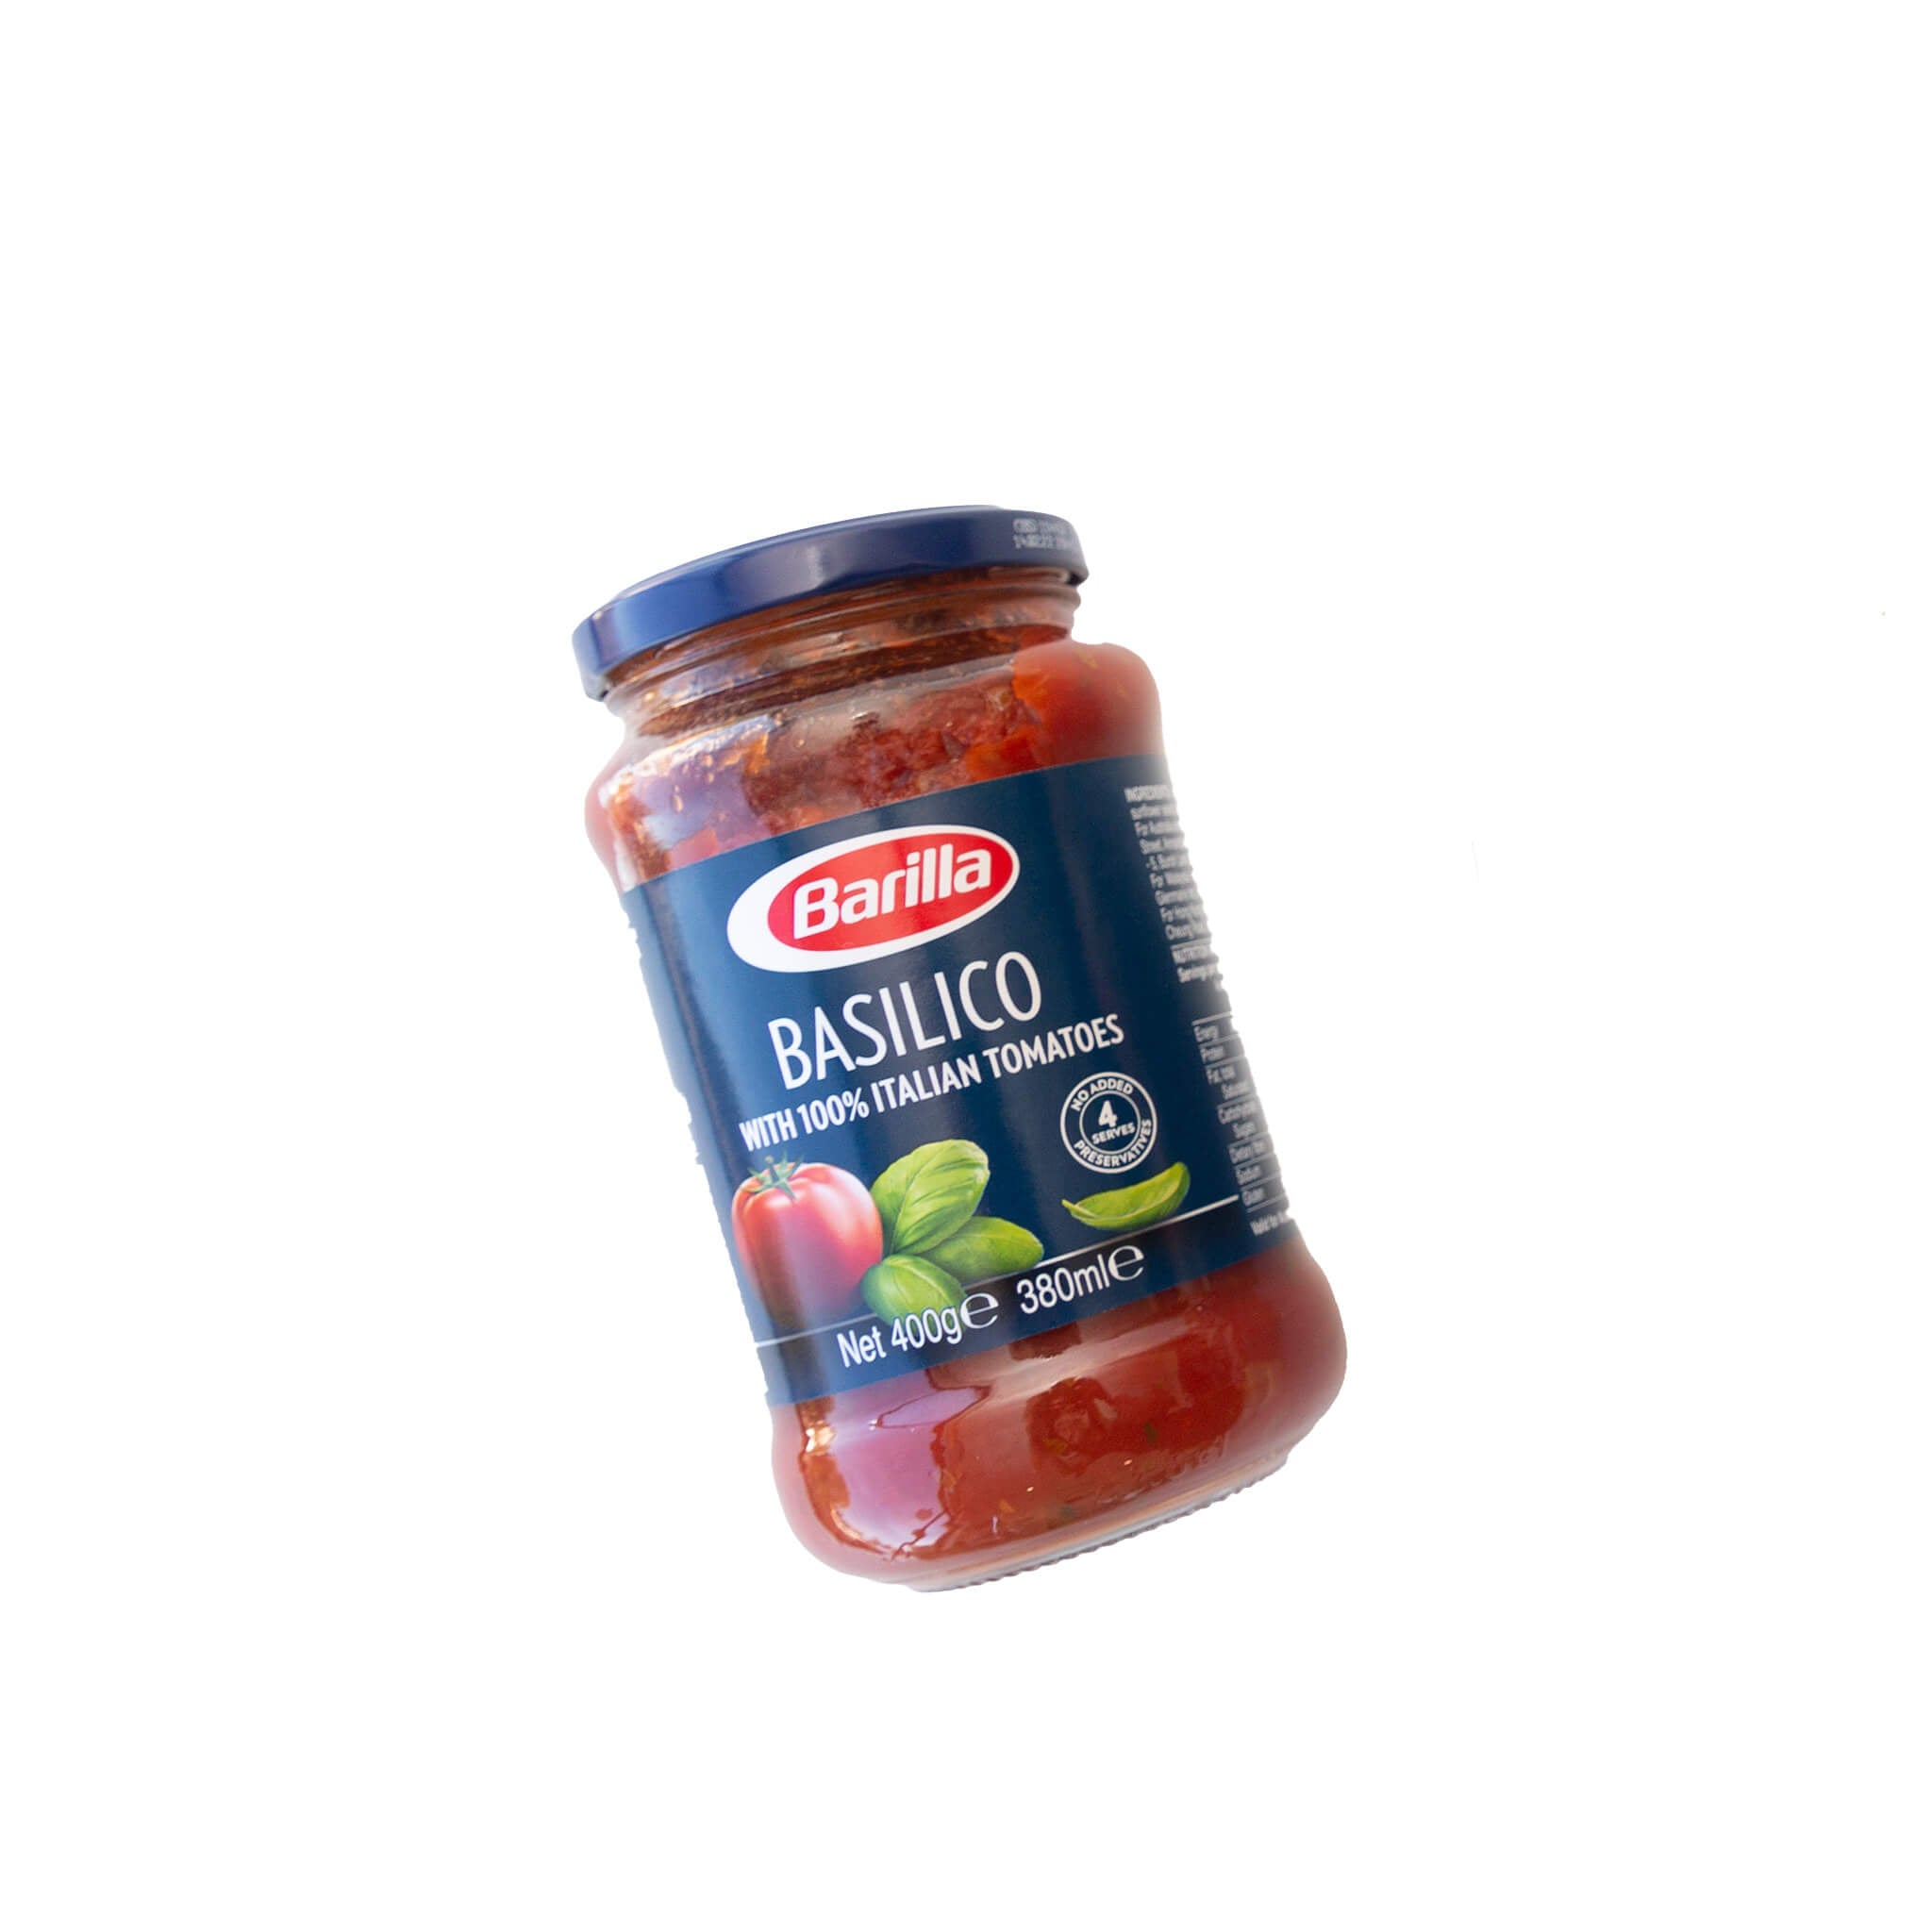 Barilla Basil Pasta Sauce 380ml